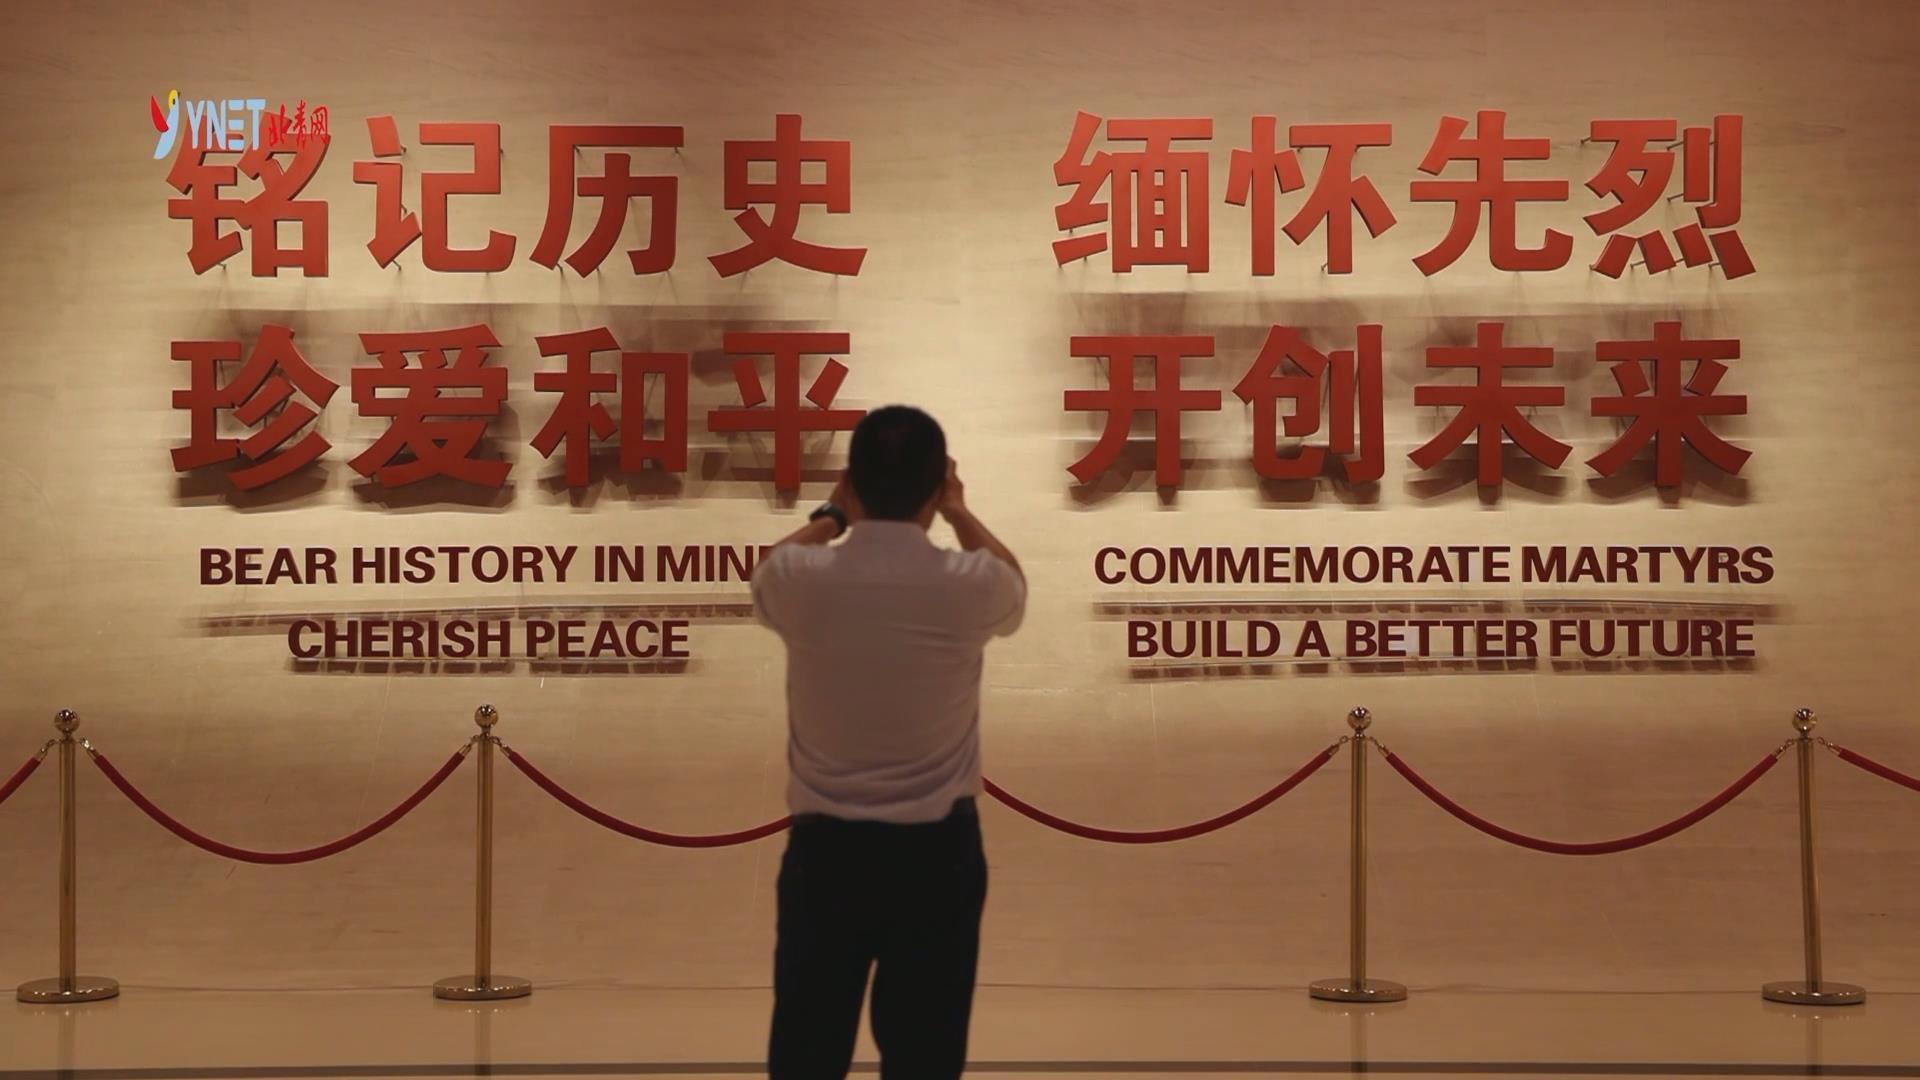 中国人民抗日战争纪念馆——这里述说着76年前的那场伟大胜利